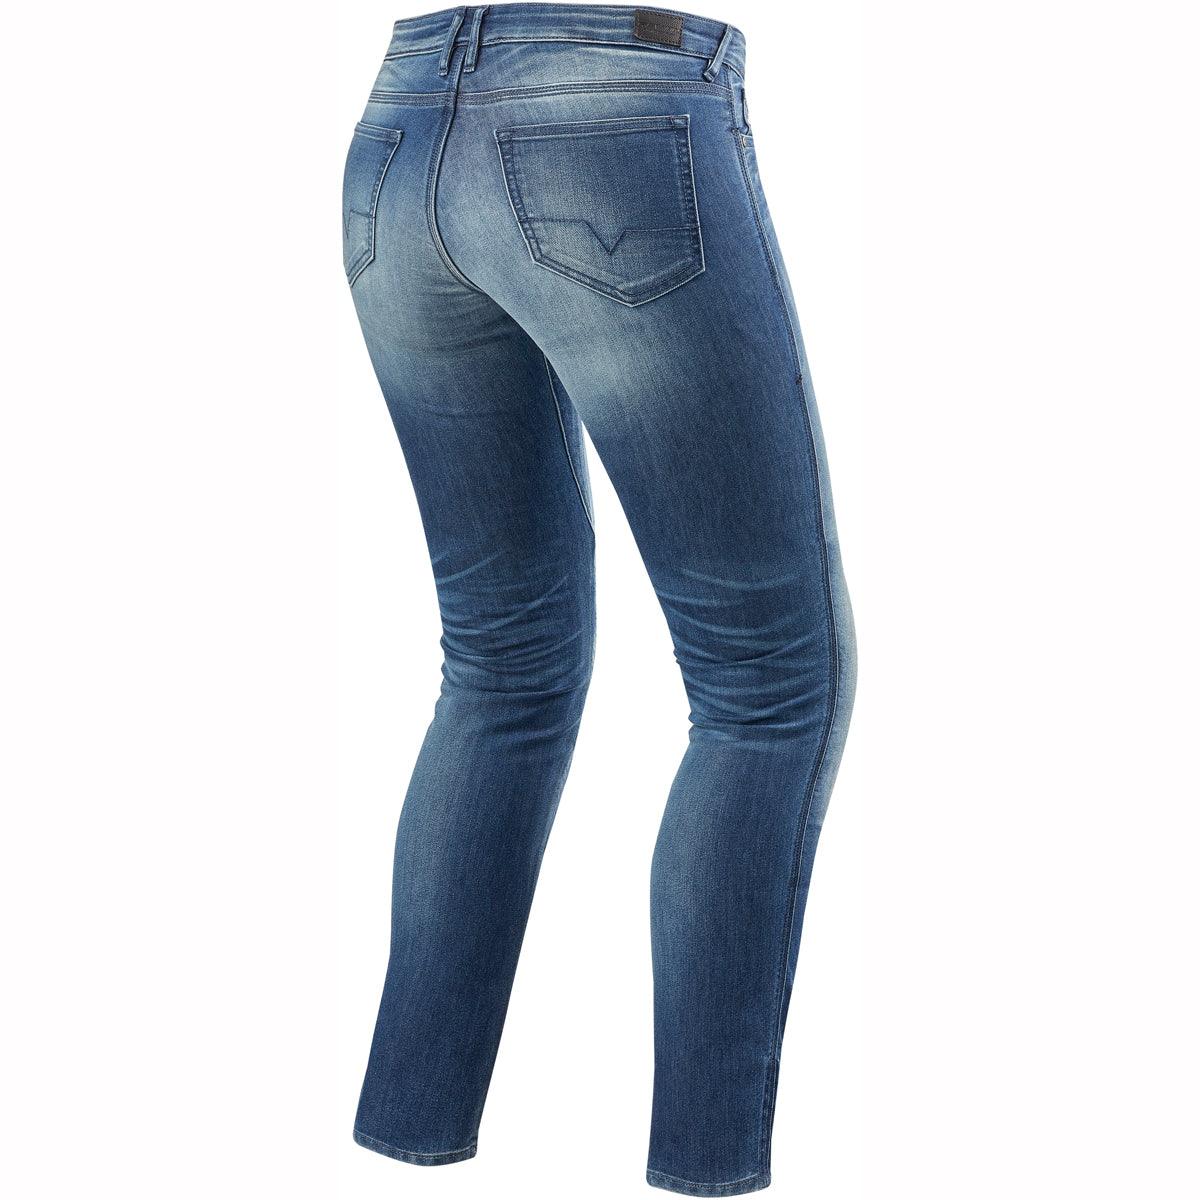 Rev It! Westwood SF Jeans Skinny Fit Ladies 32in Leg Blue - Armoured Jeans